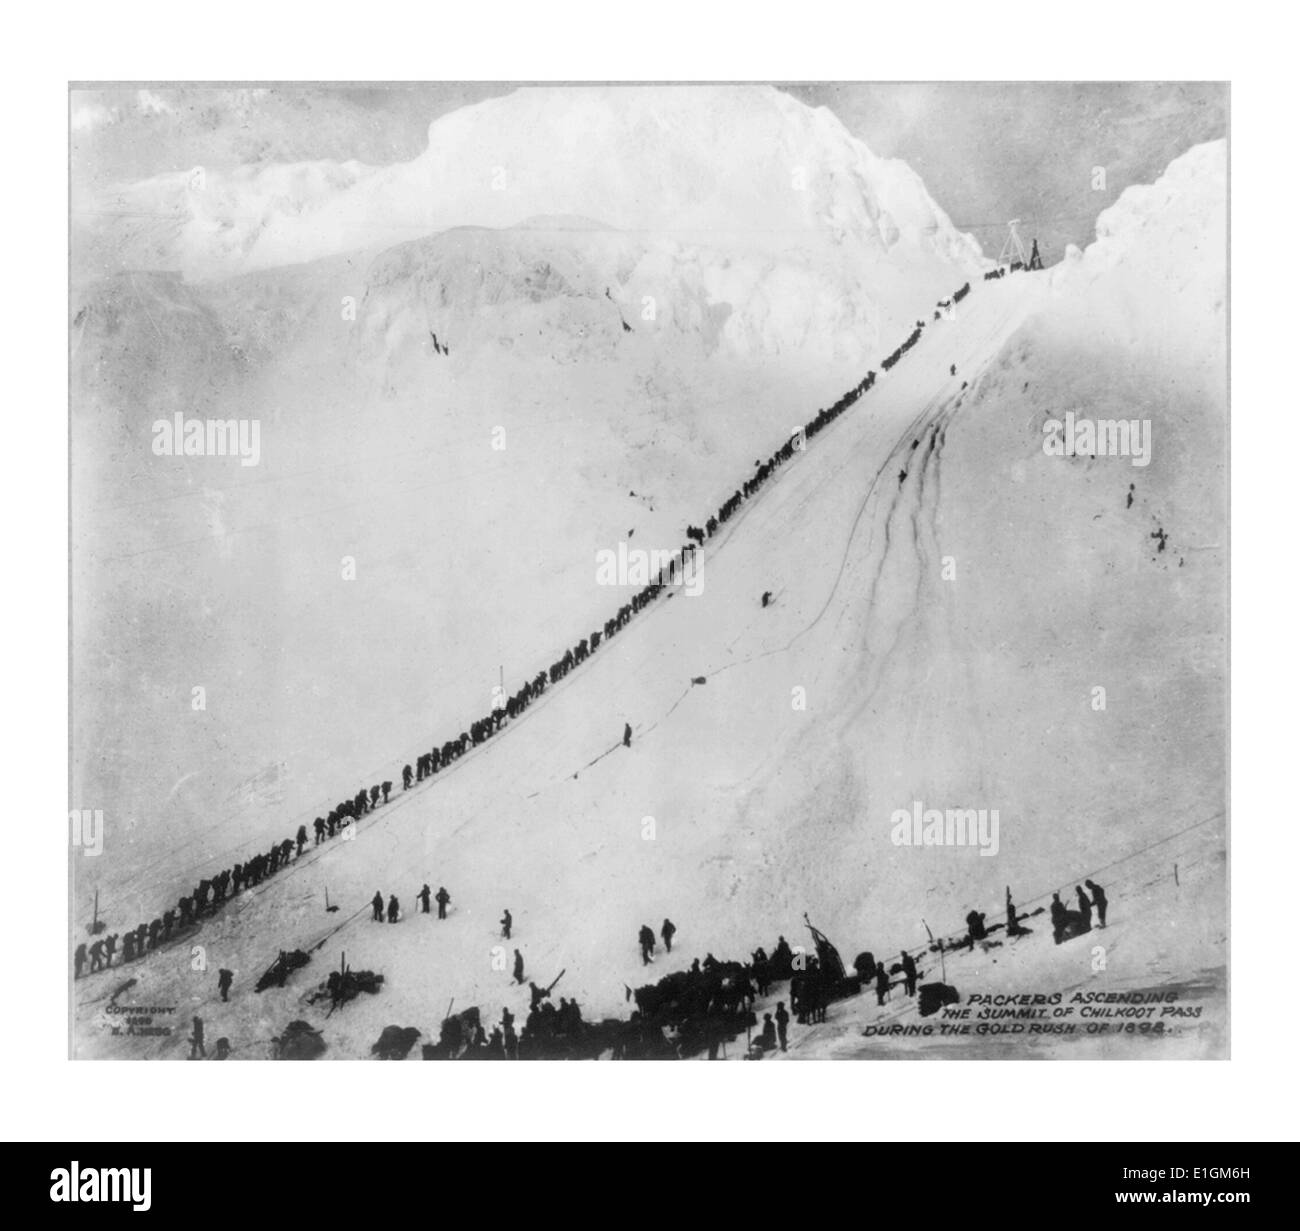 Der Aufstieg zum Gipfels des Chilkoot Pass während des Goldrausches von 1898 Packers zu fotografieren. Datiert 1898 Stockfoto